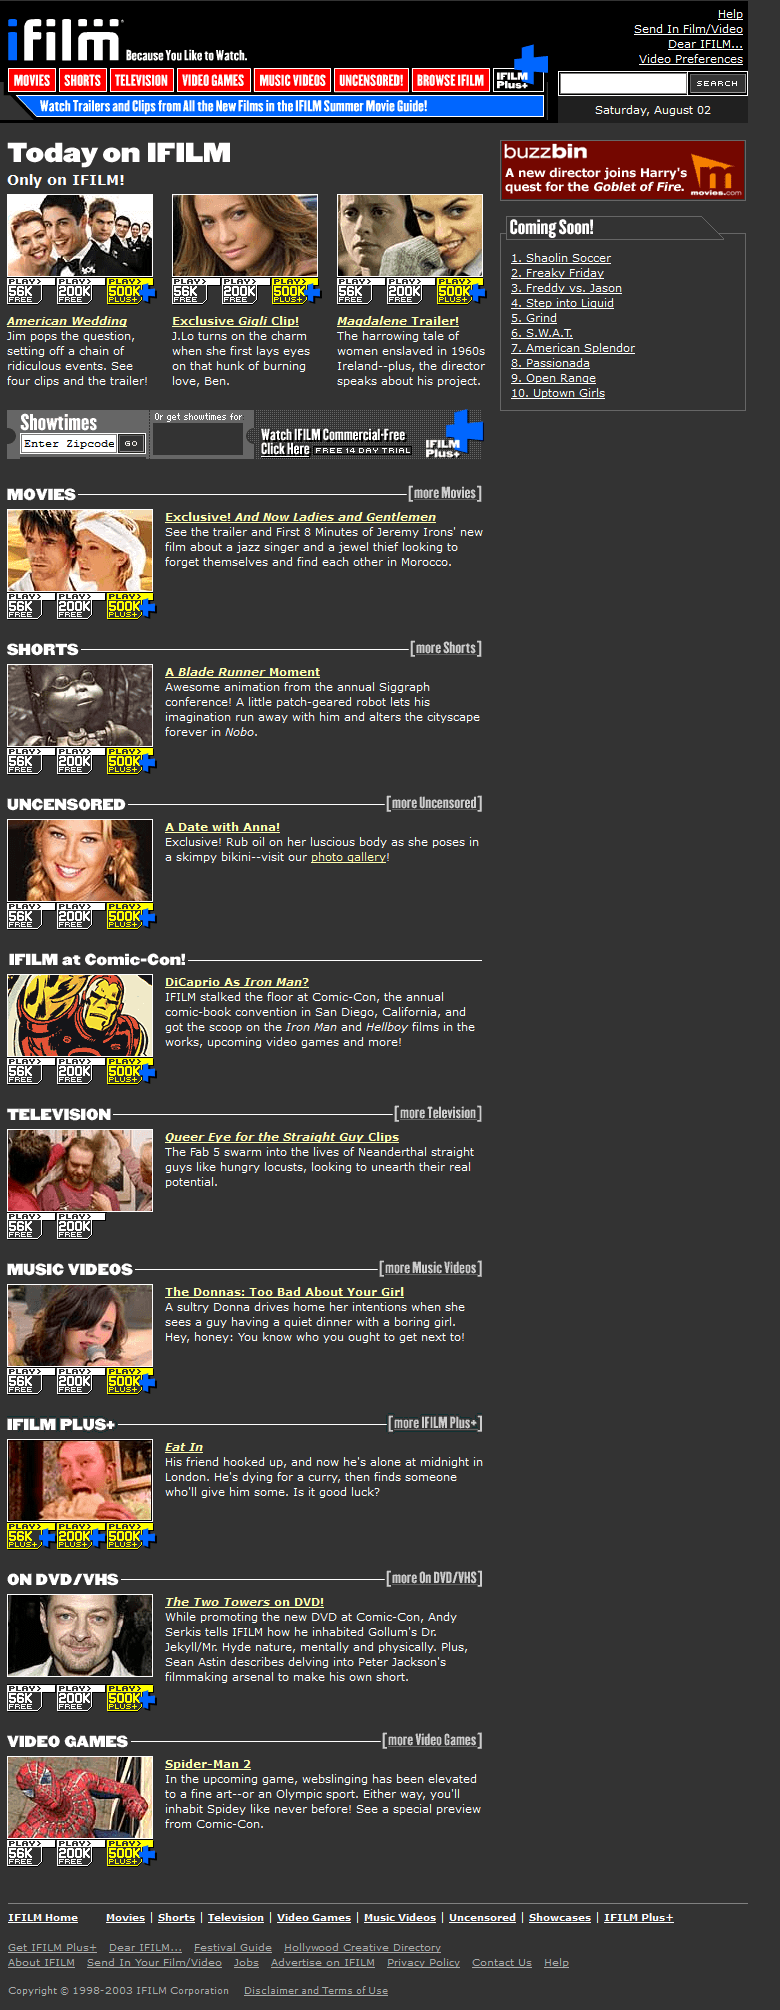 iFilm website in 2003